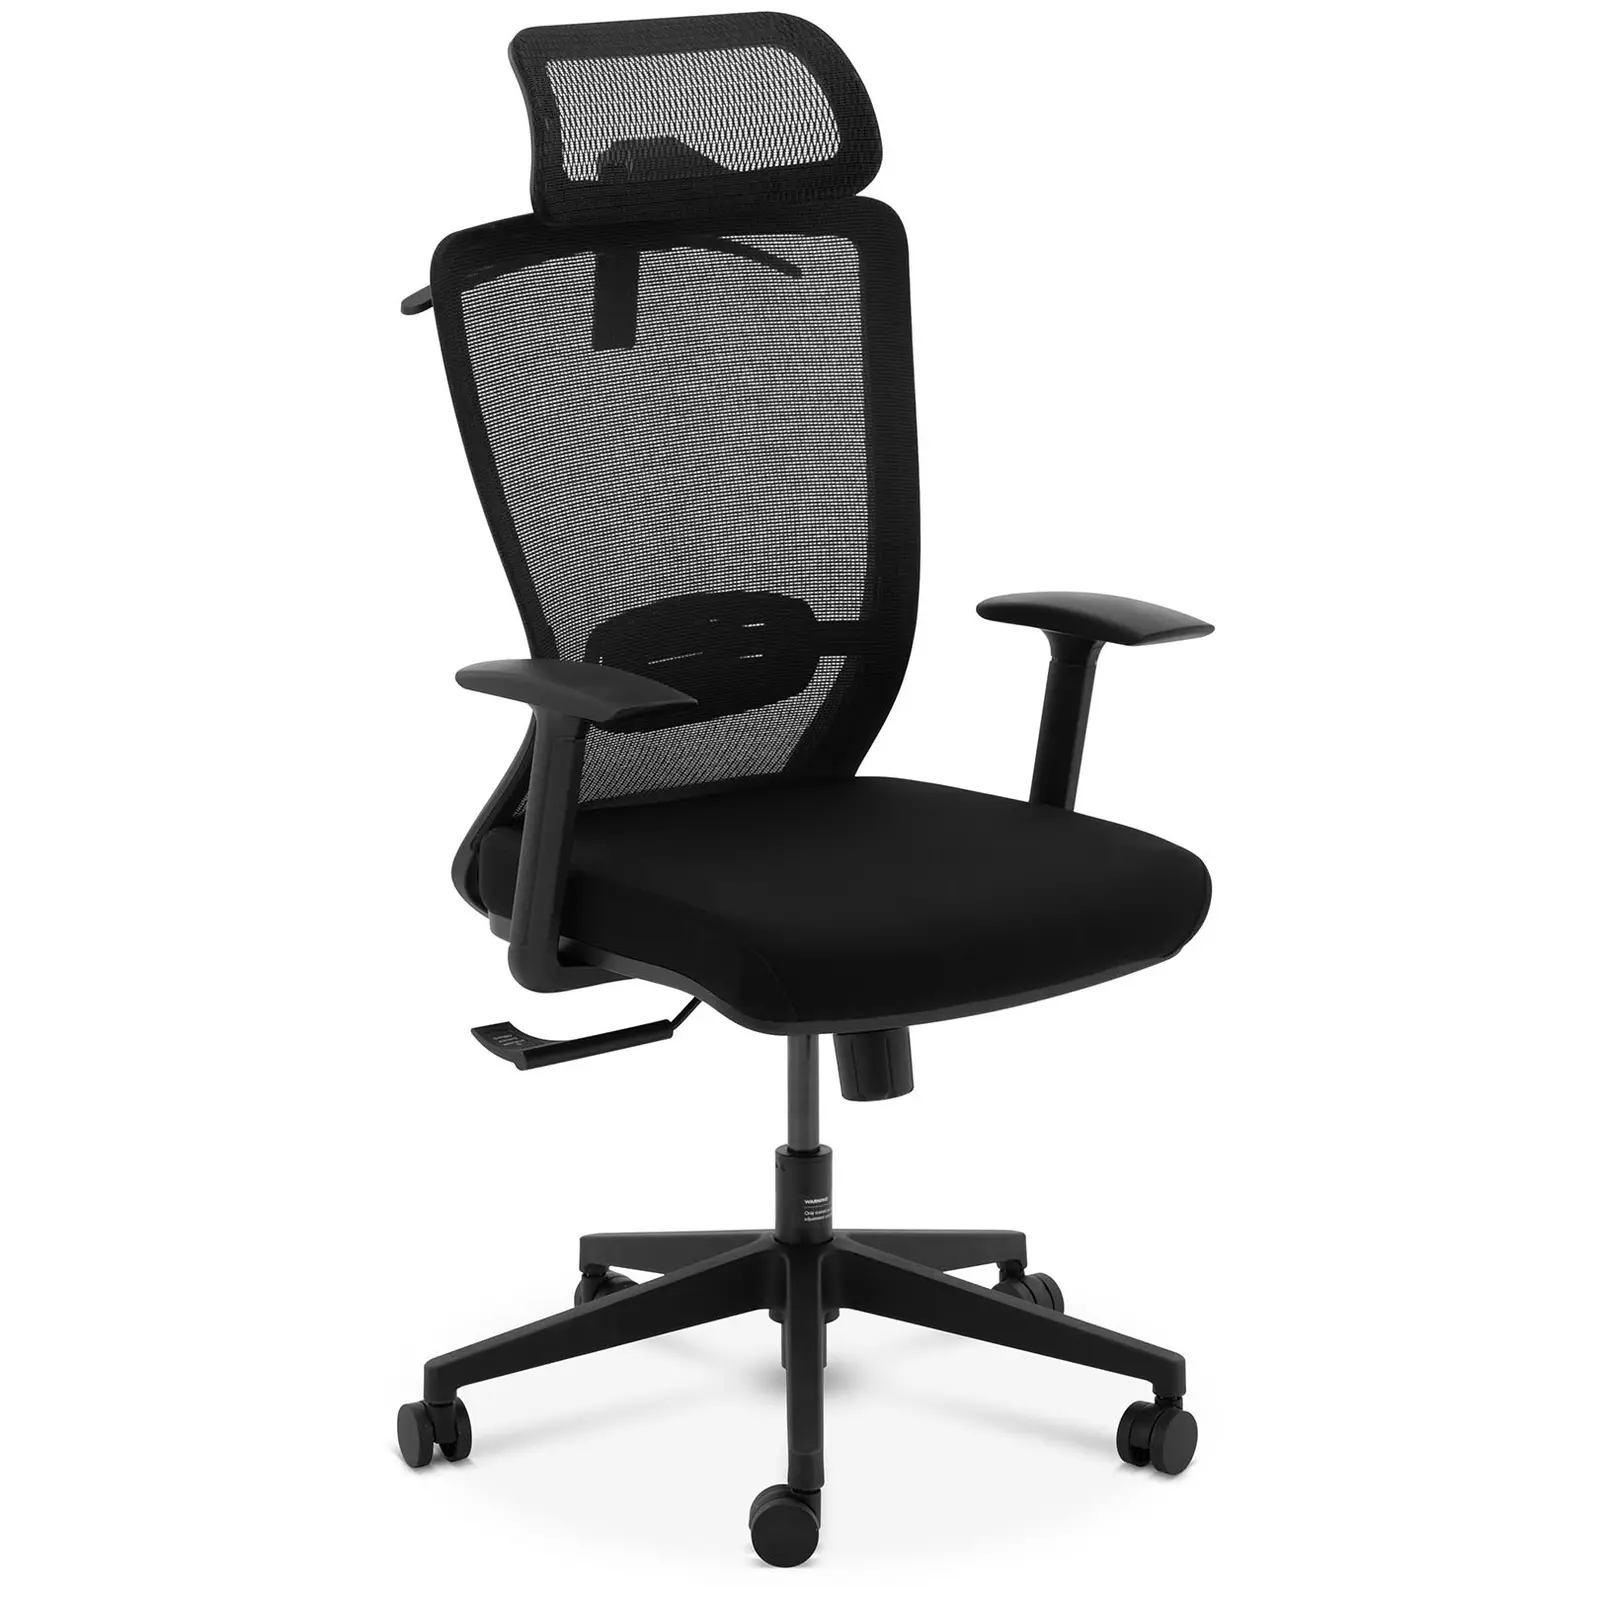 B-Ware Bürostuhl - Netzrücken - Kopfstütze - 50 x 50 cm Sitz - bis 150 kg - schwarz